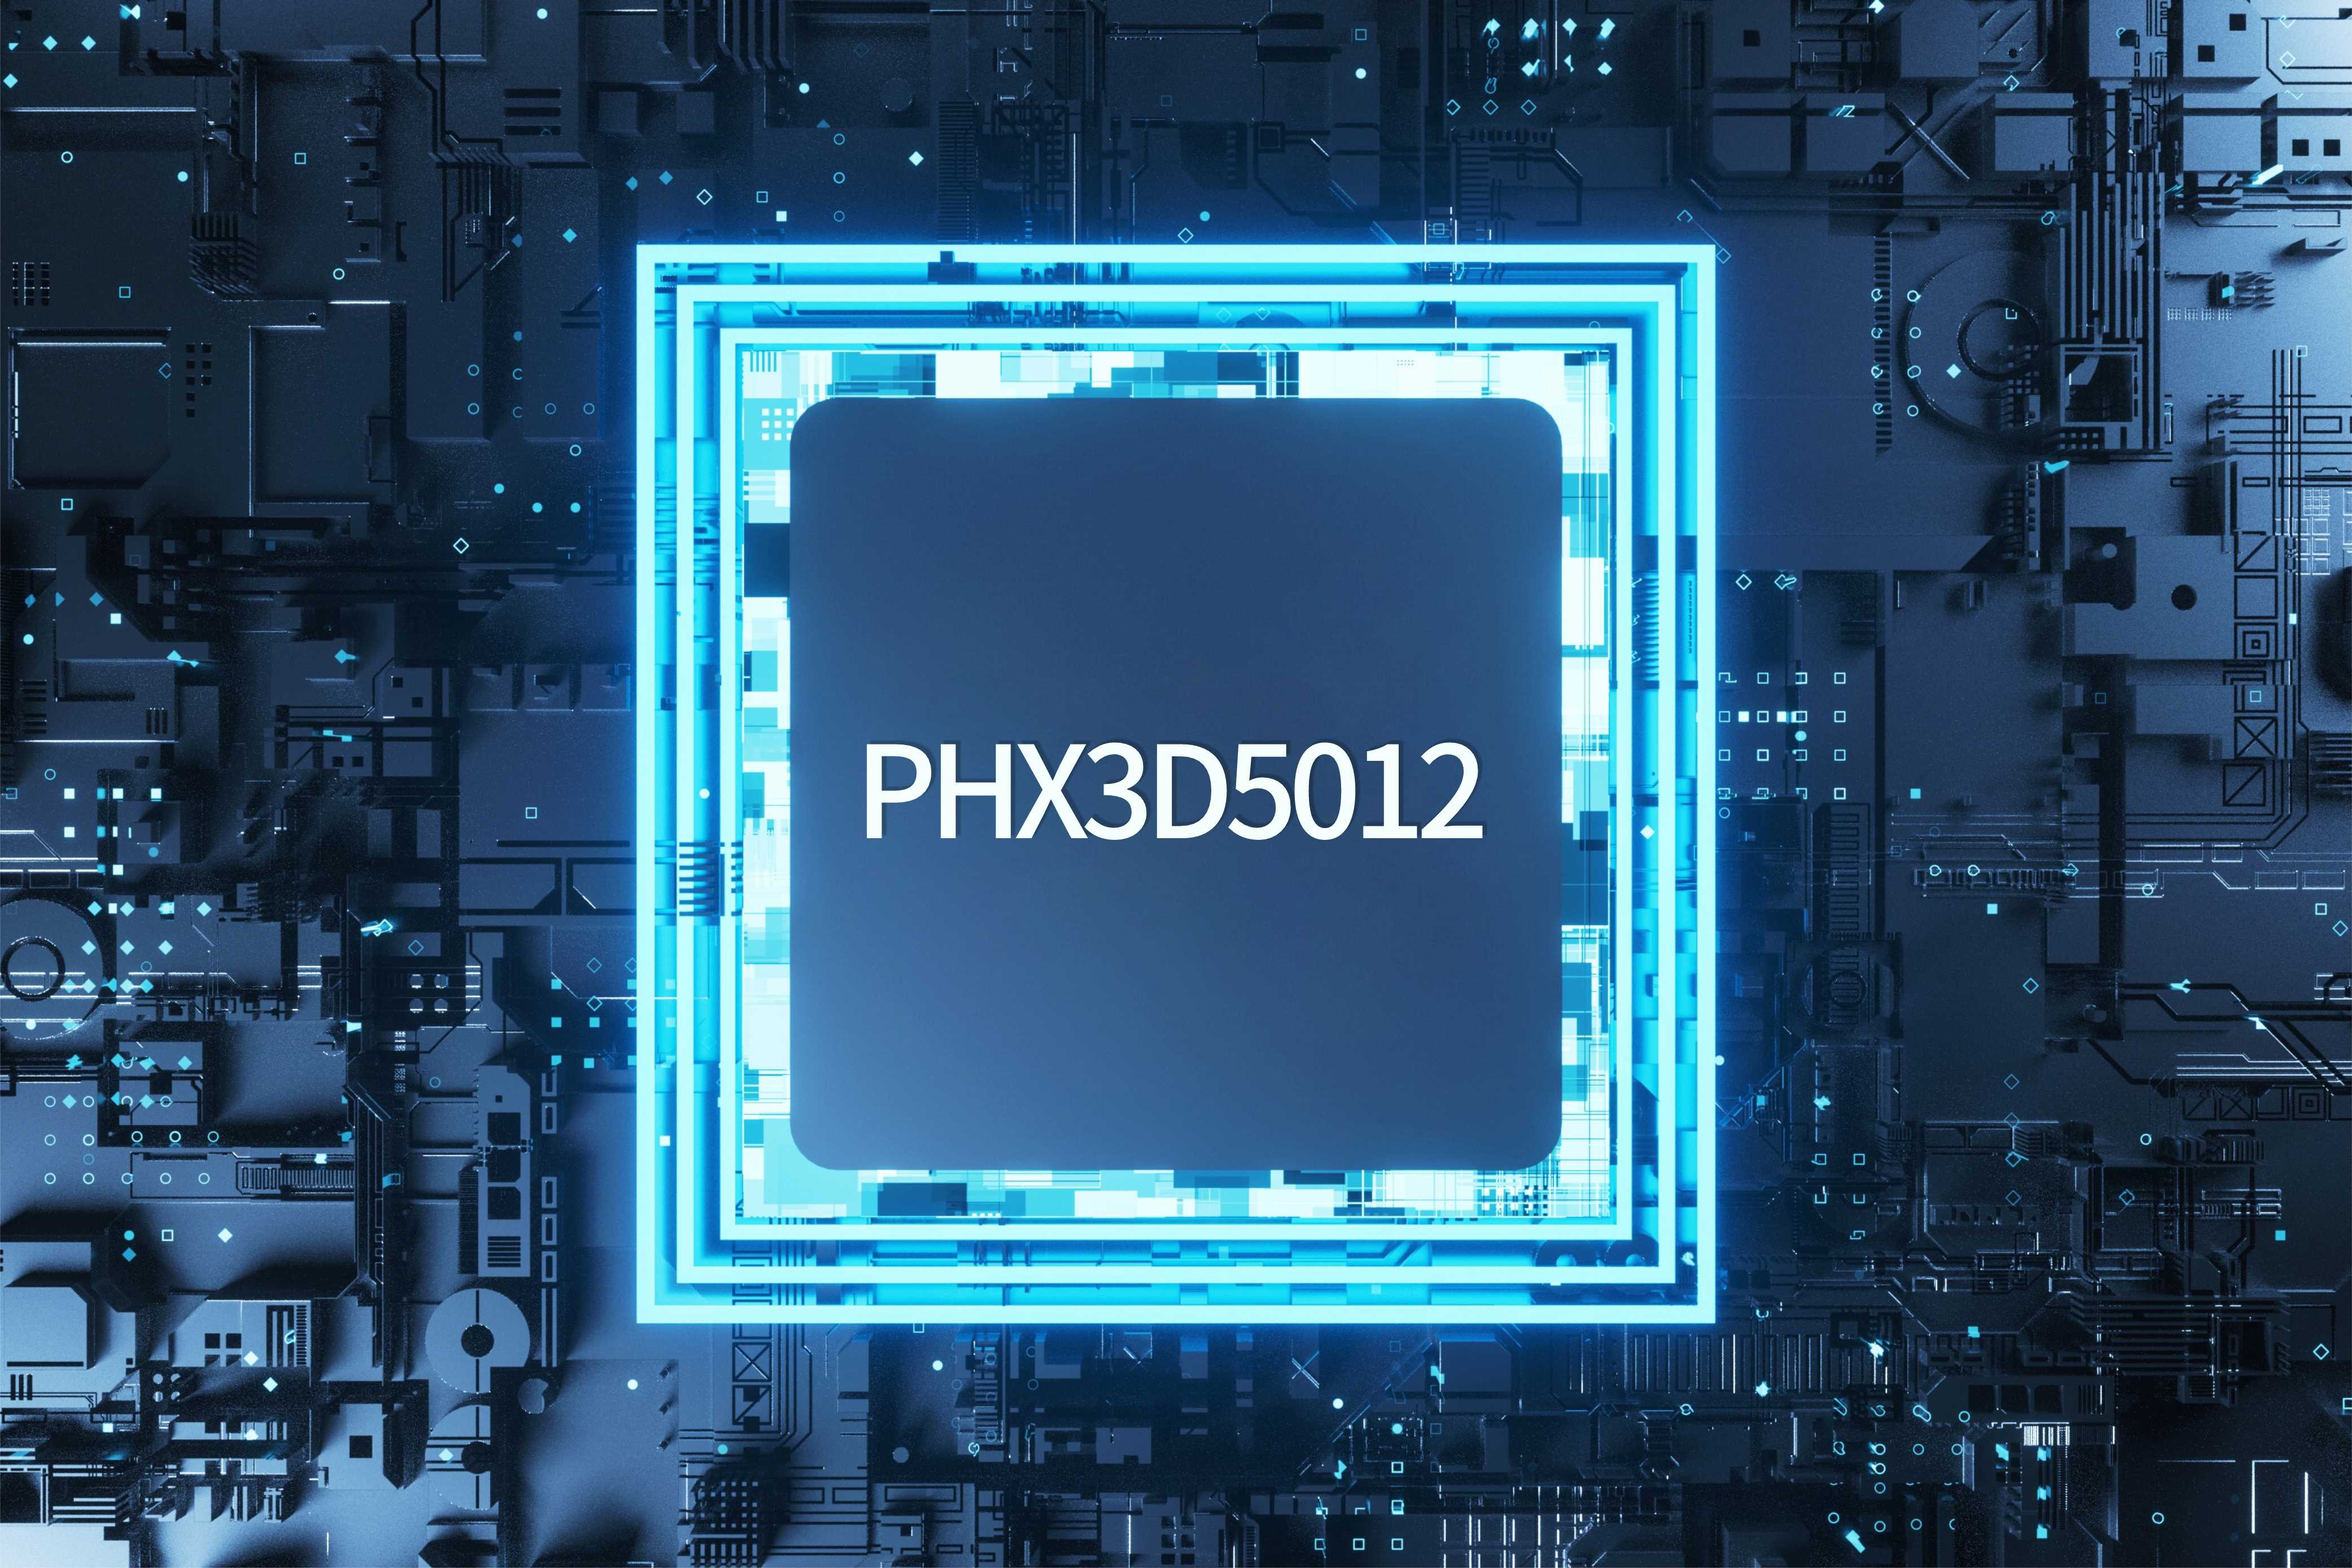 PHX3D5012